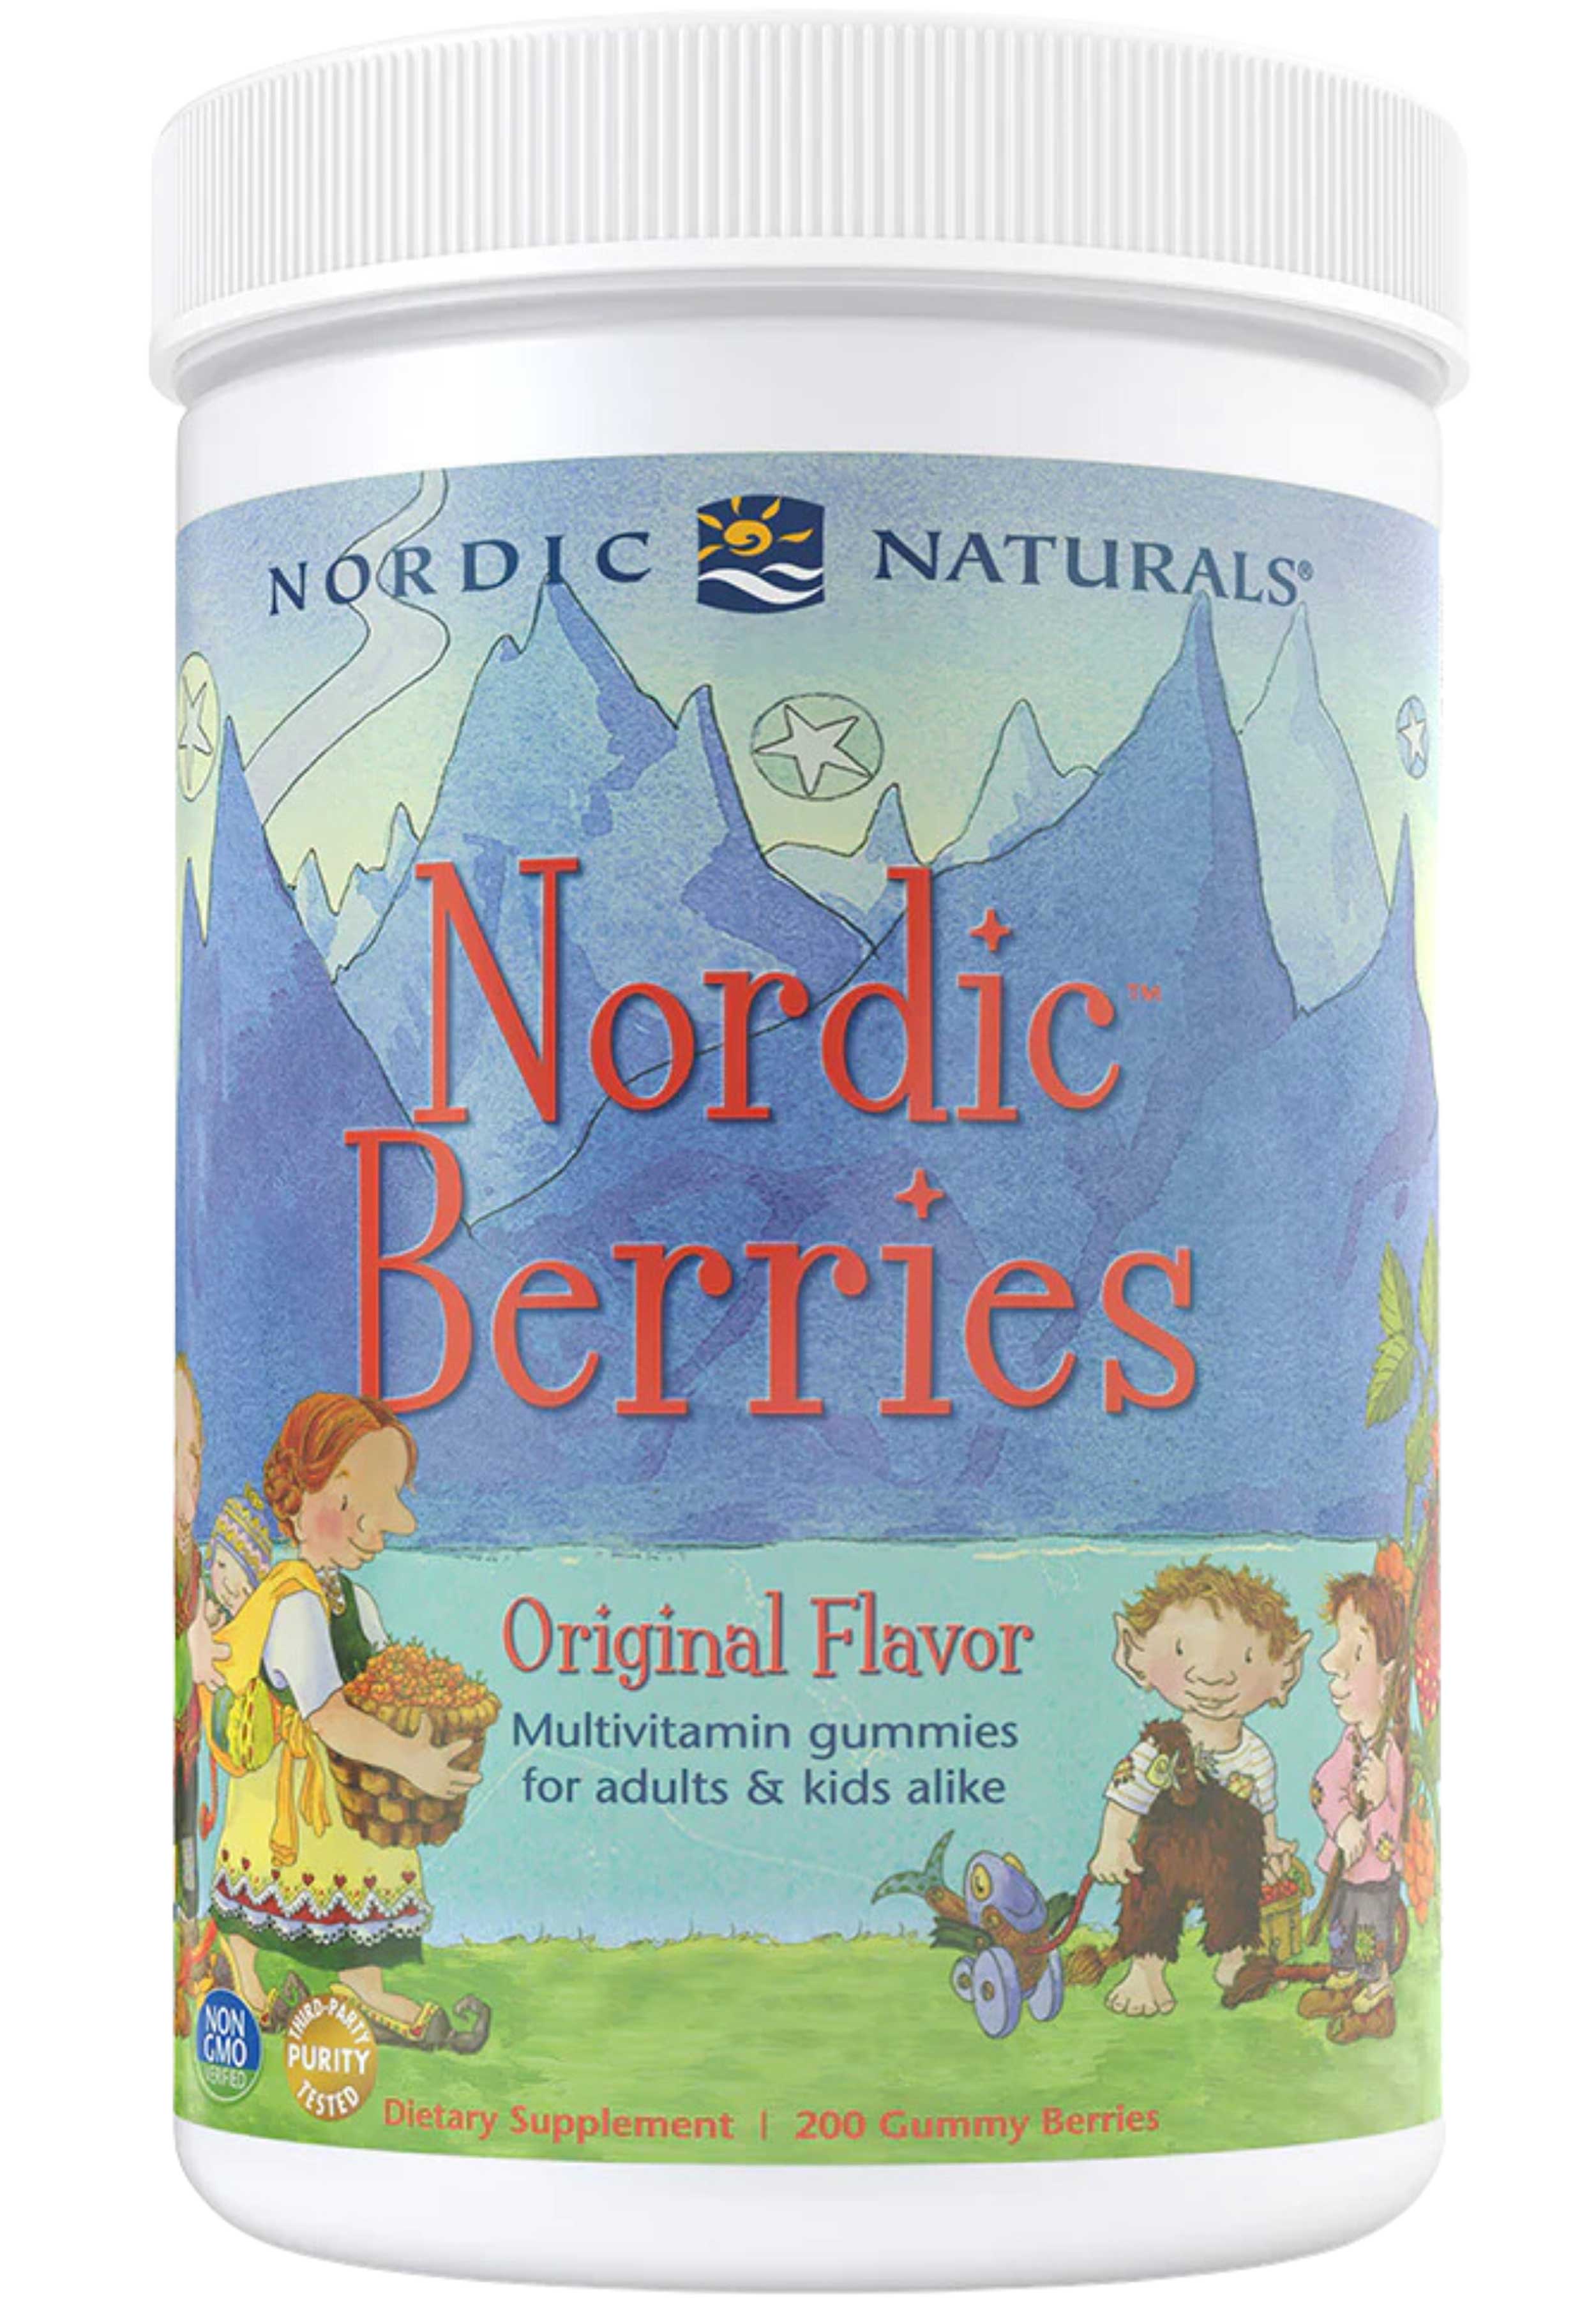 Nordic Naturals Nordic Berries